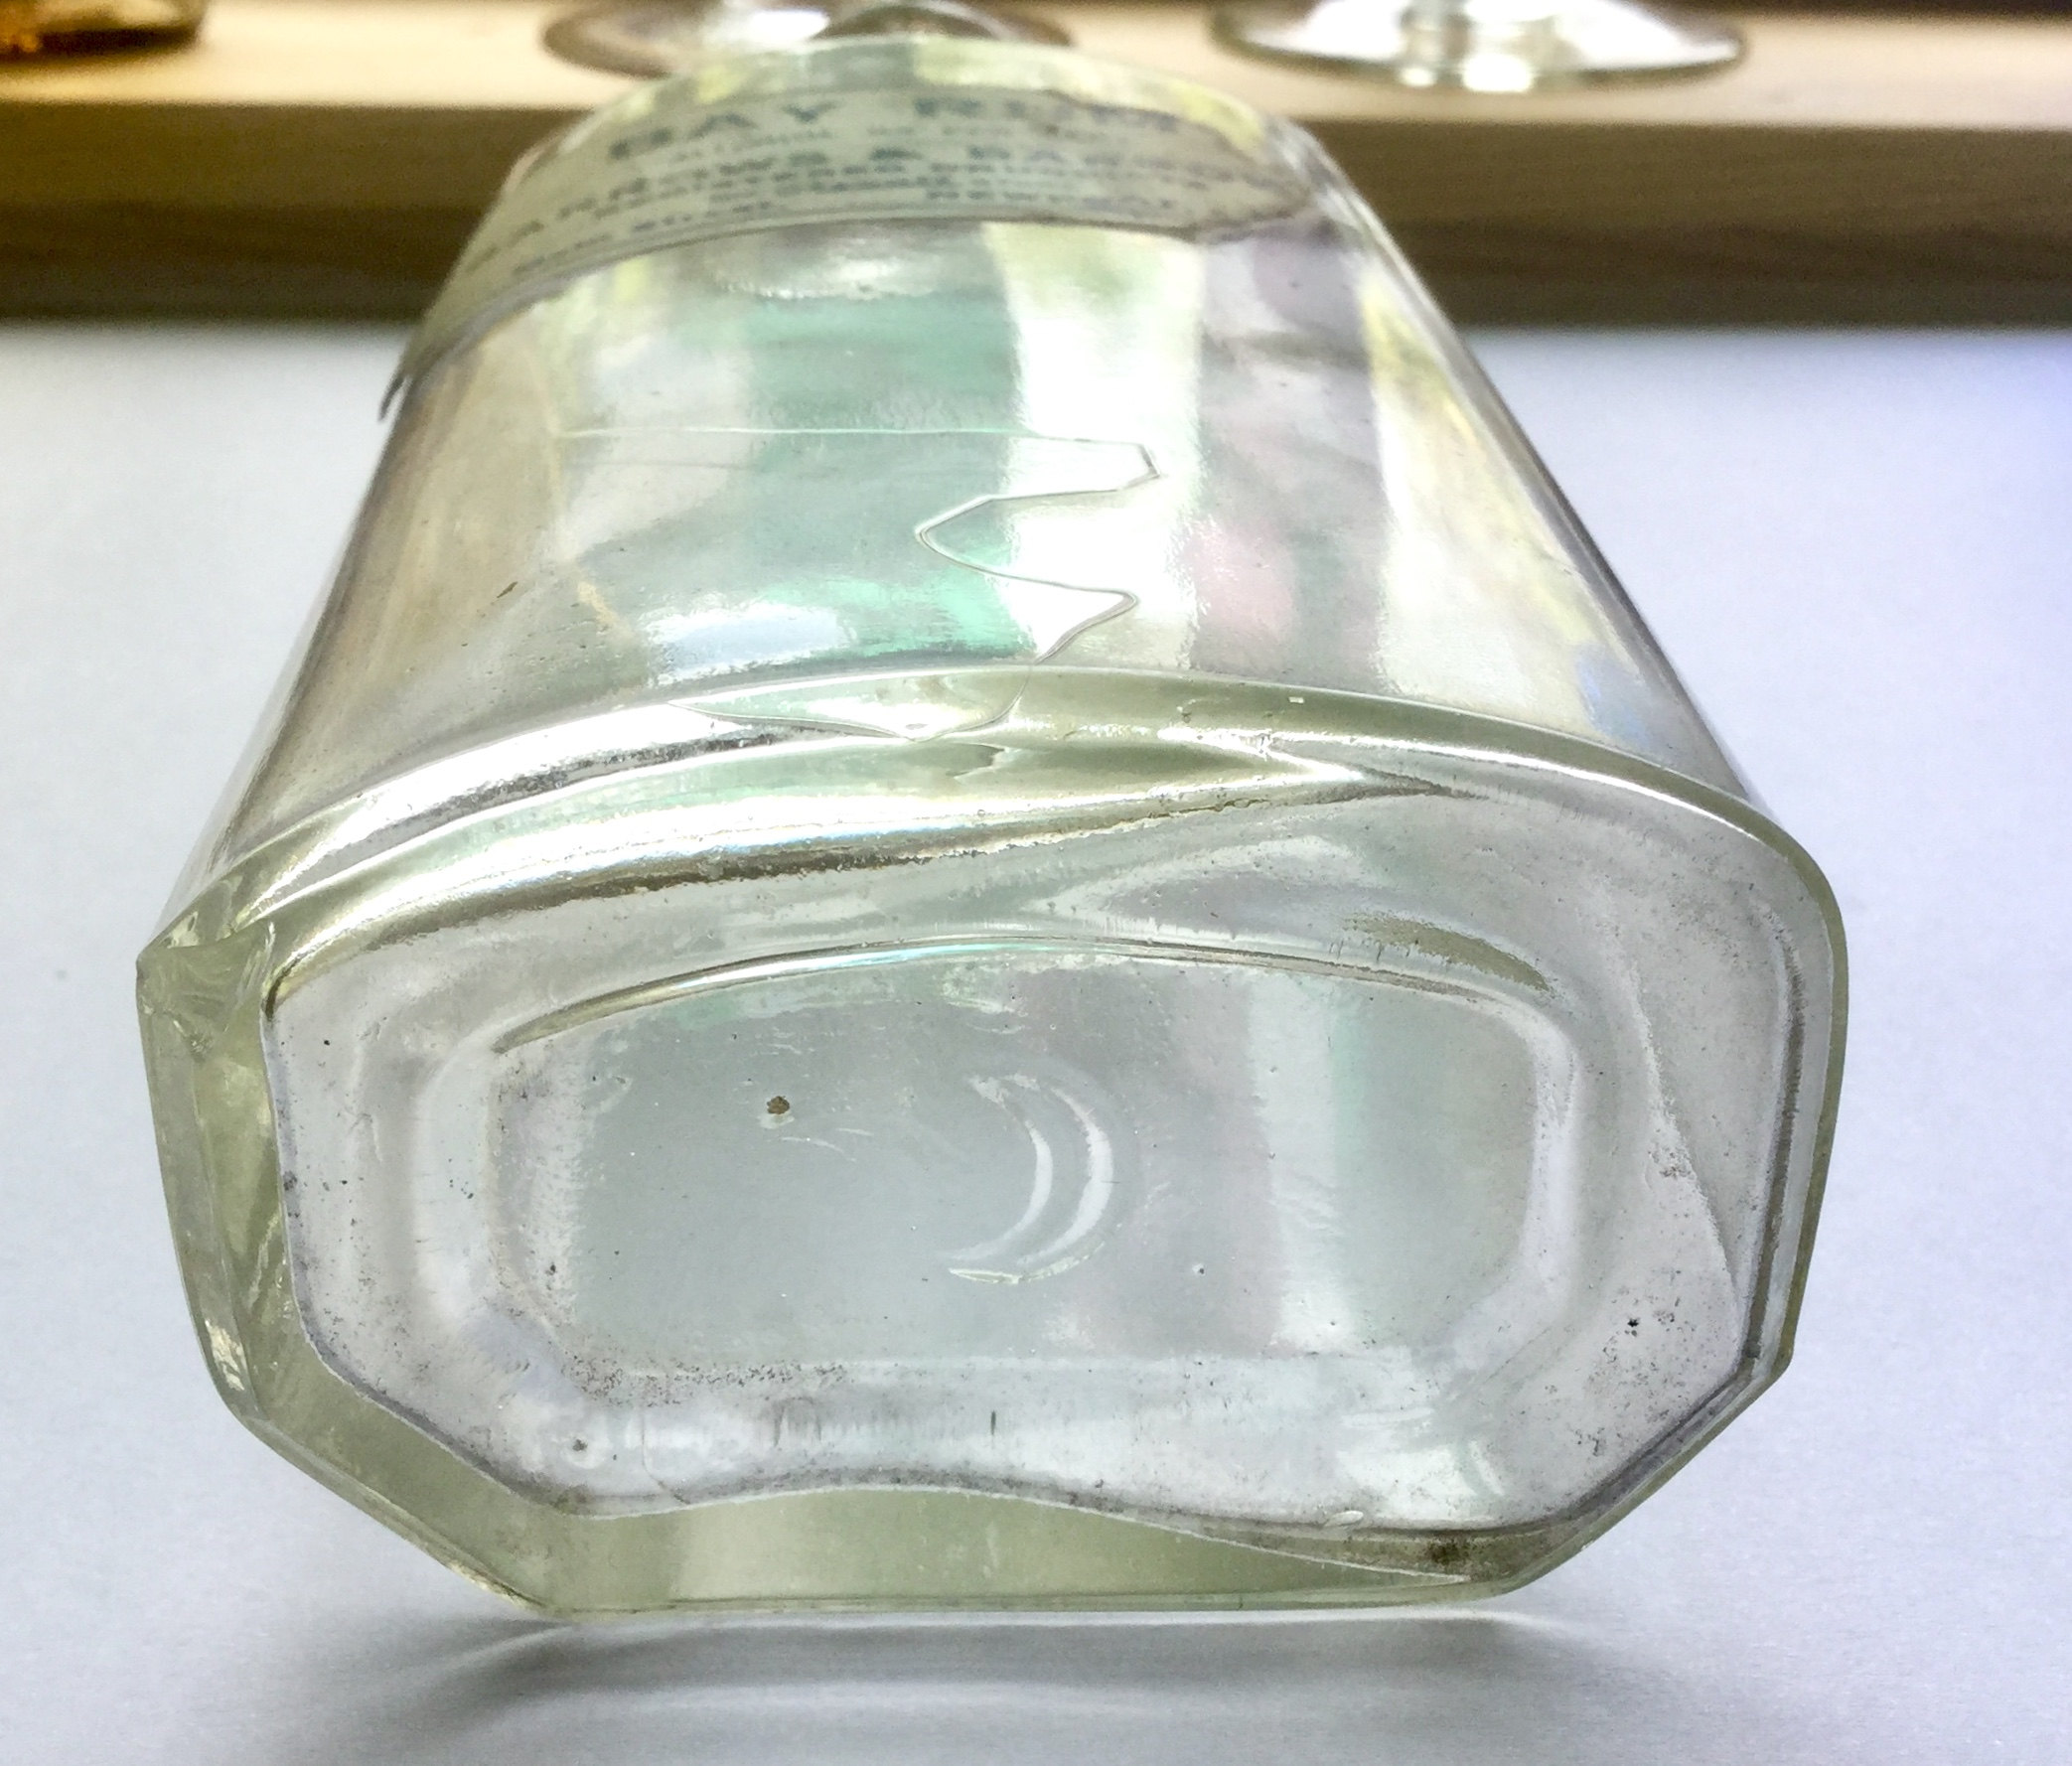 druggist bottle from Maine